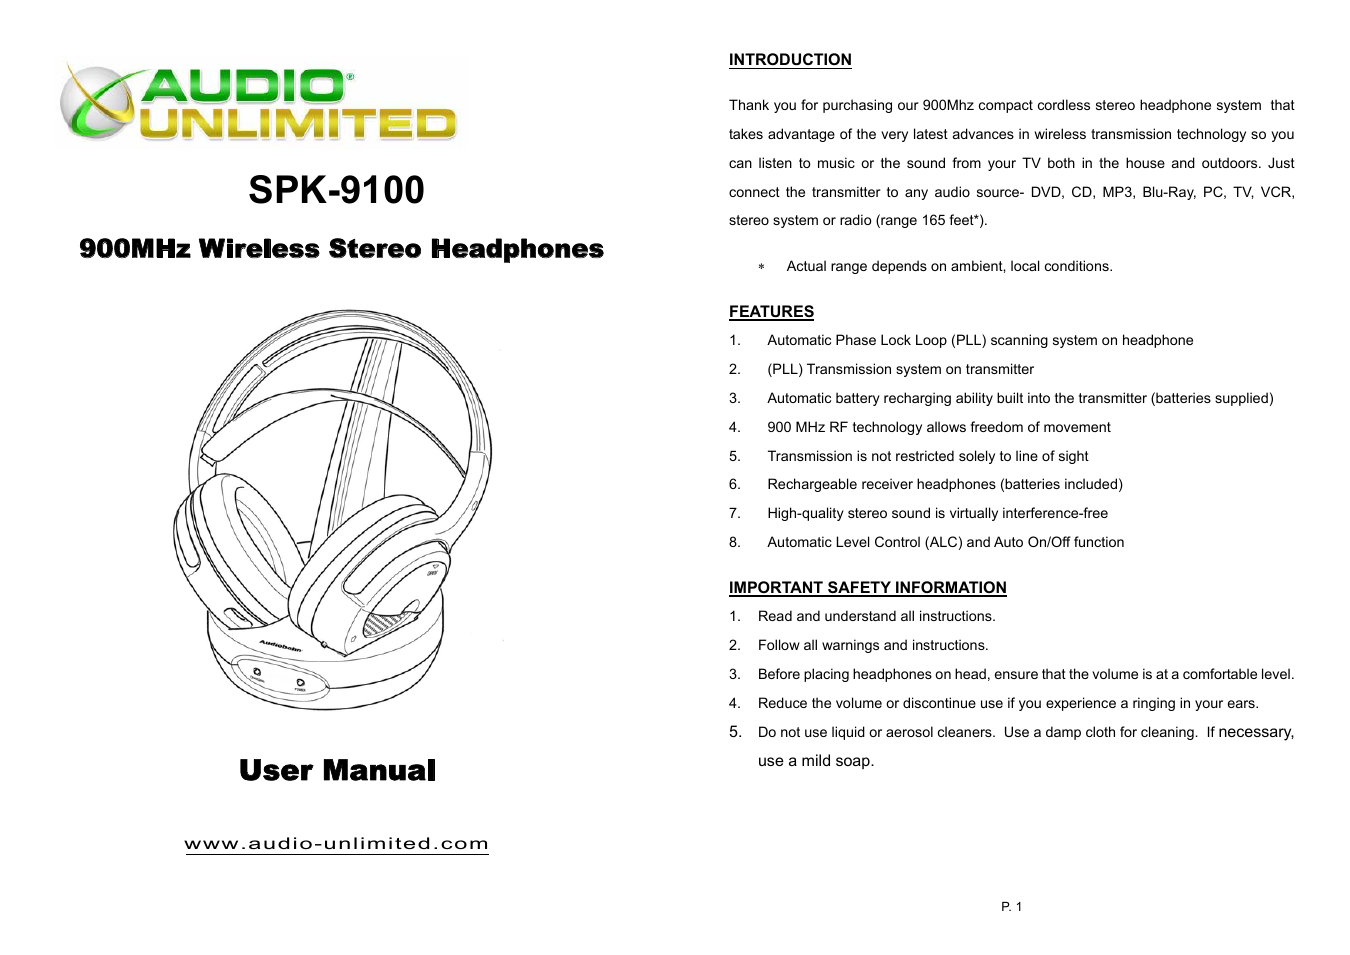 spk-9100 Owners Manual